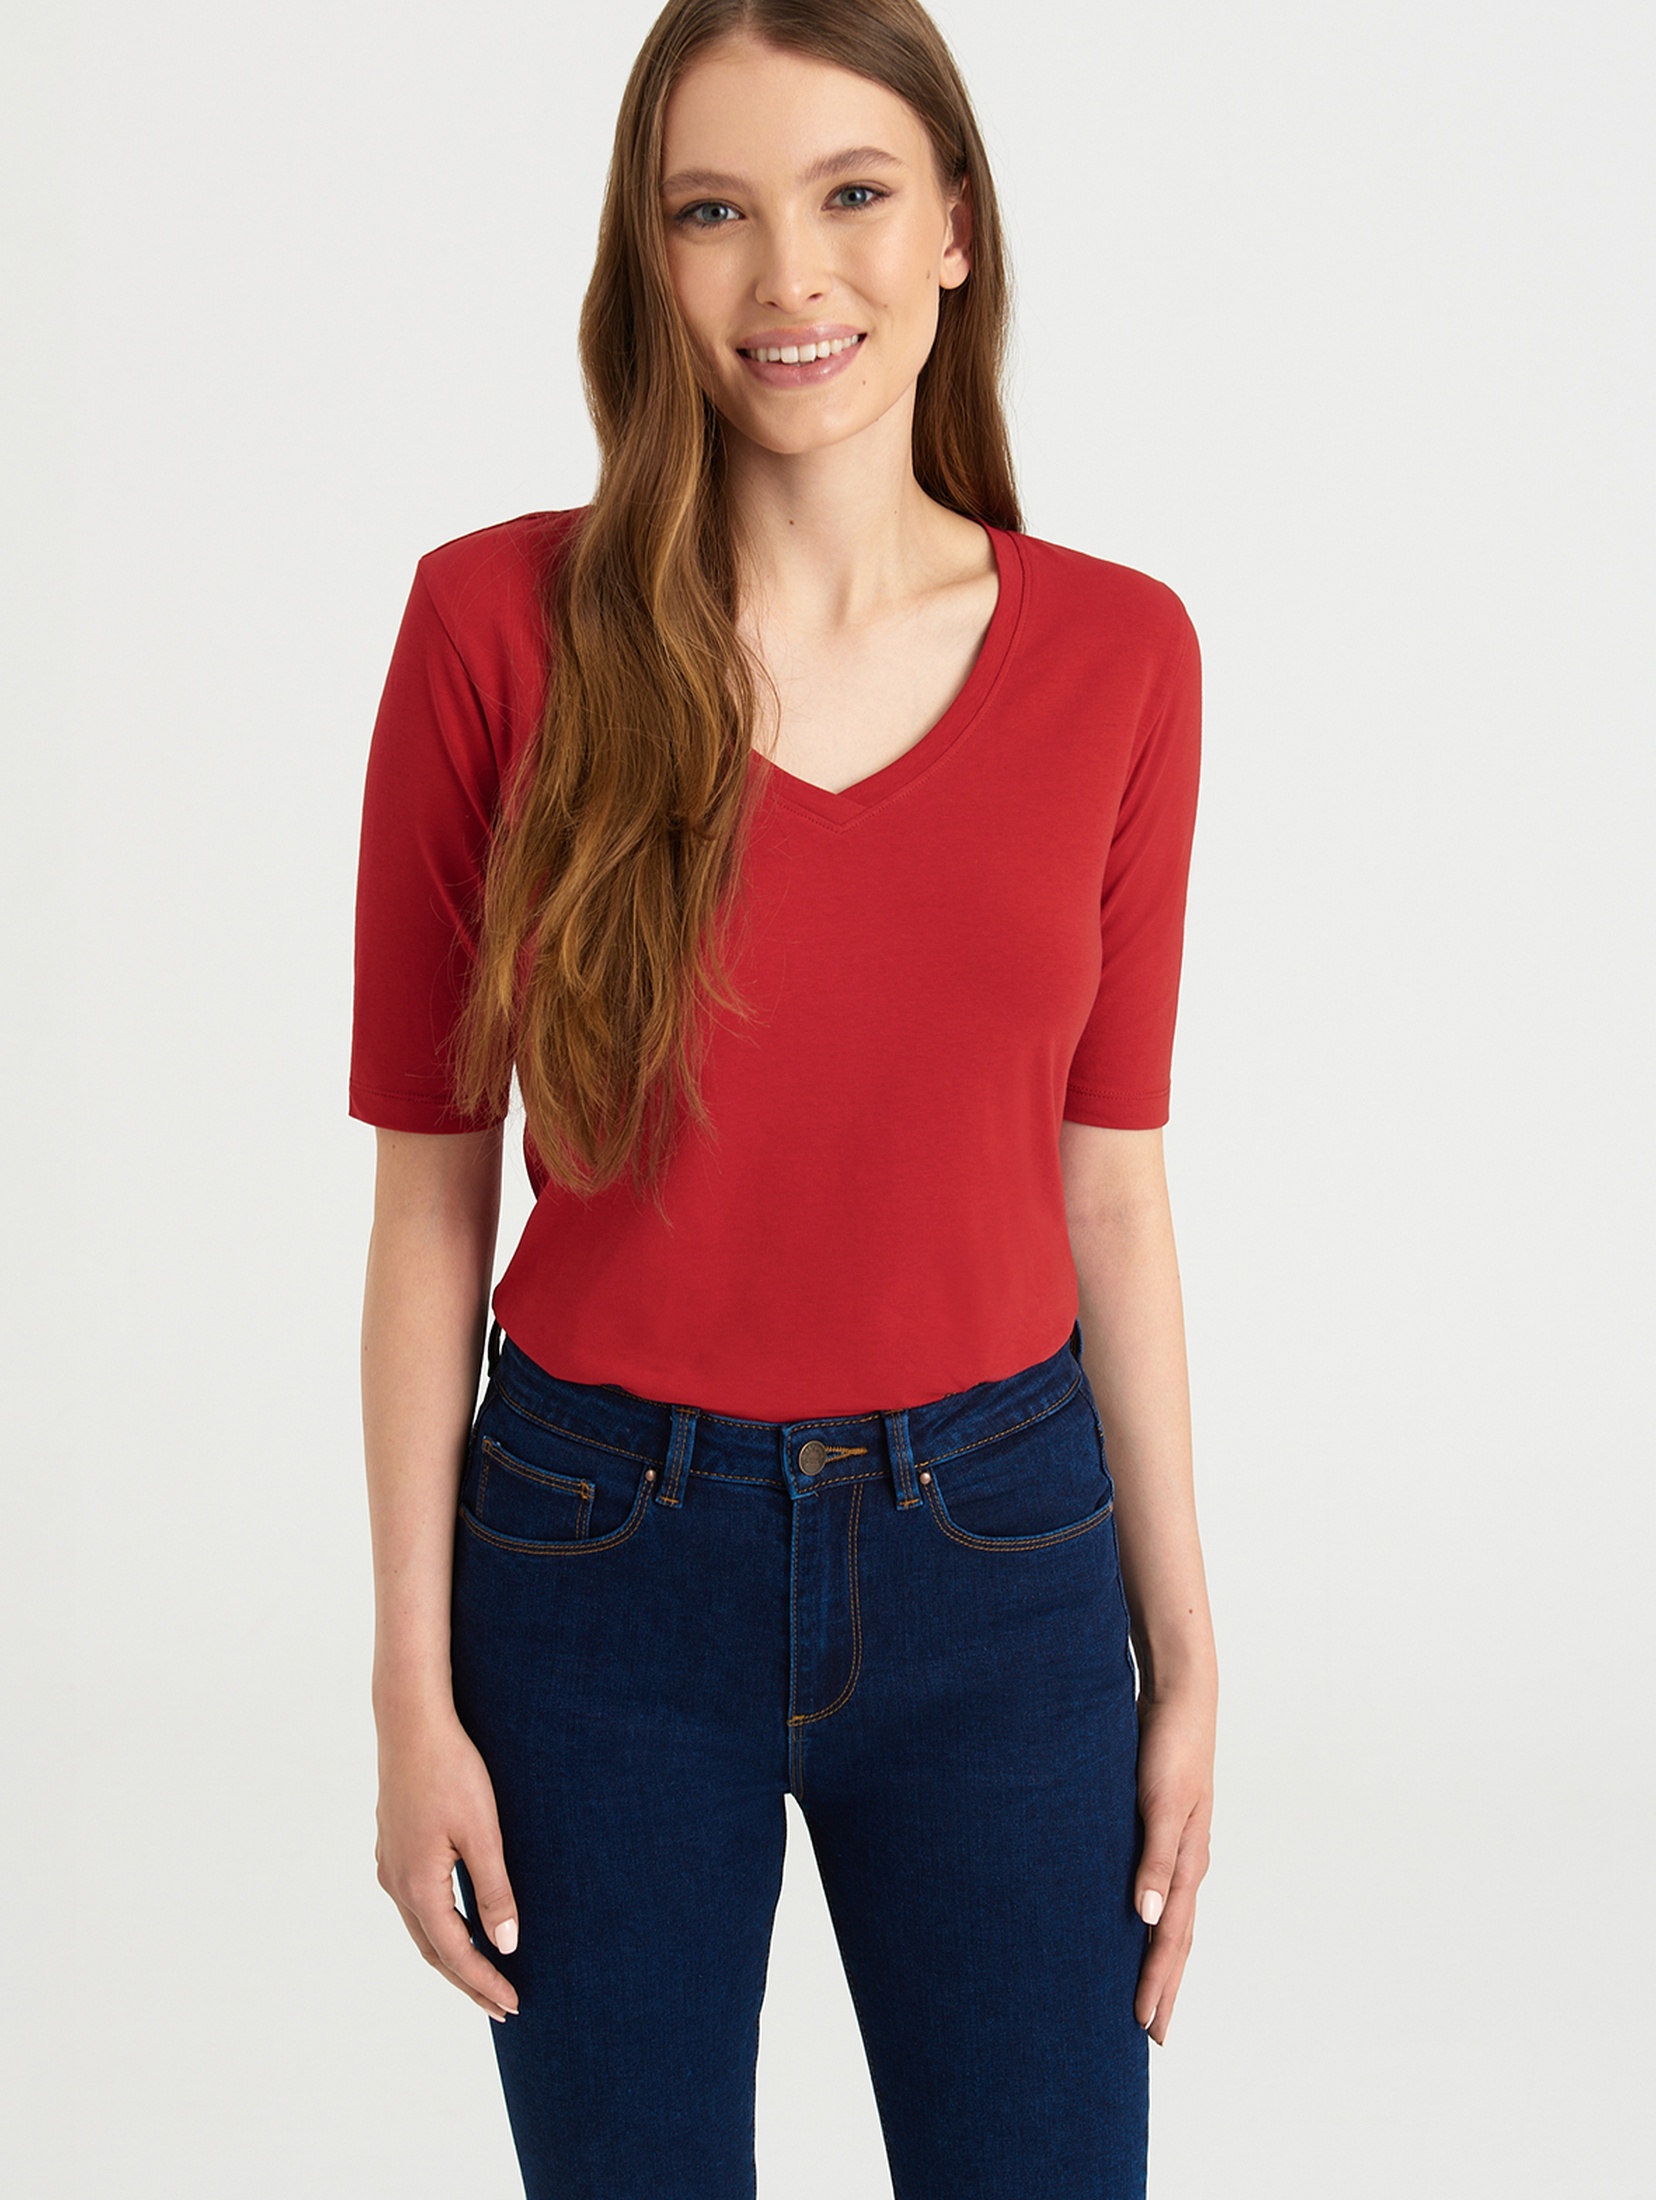 Koszulka damska czerwona